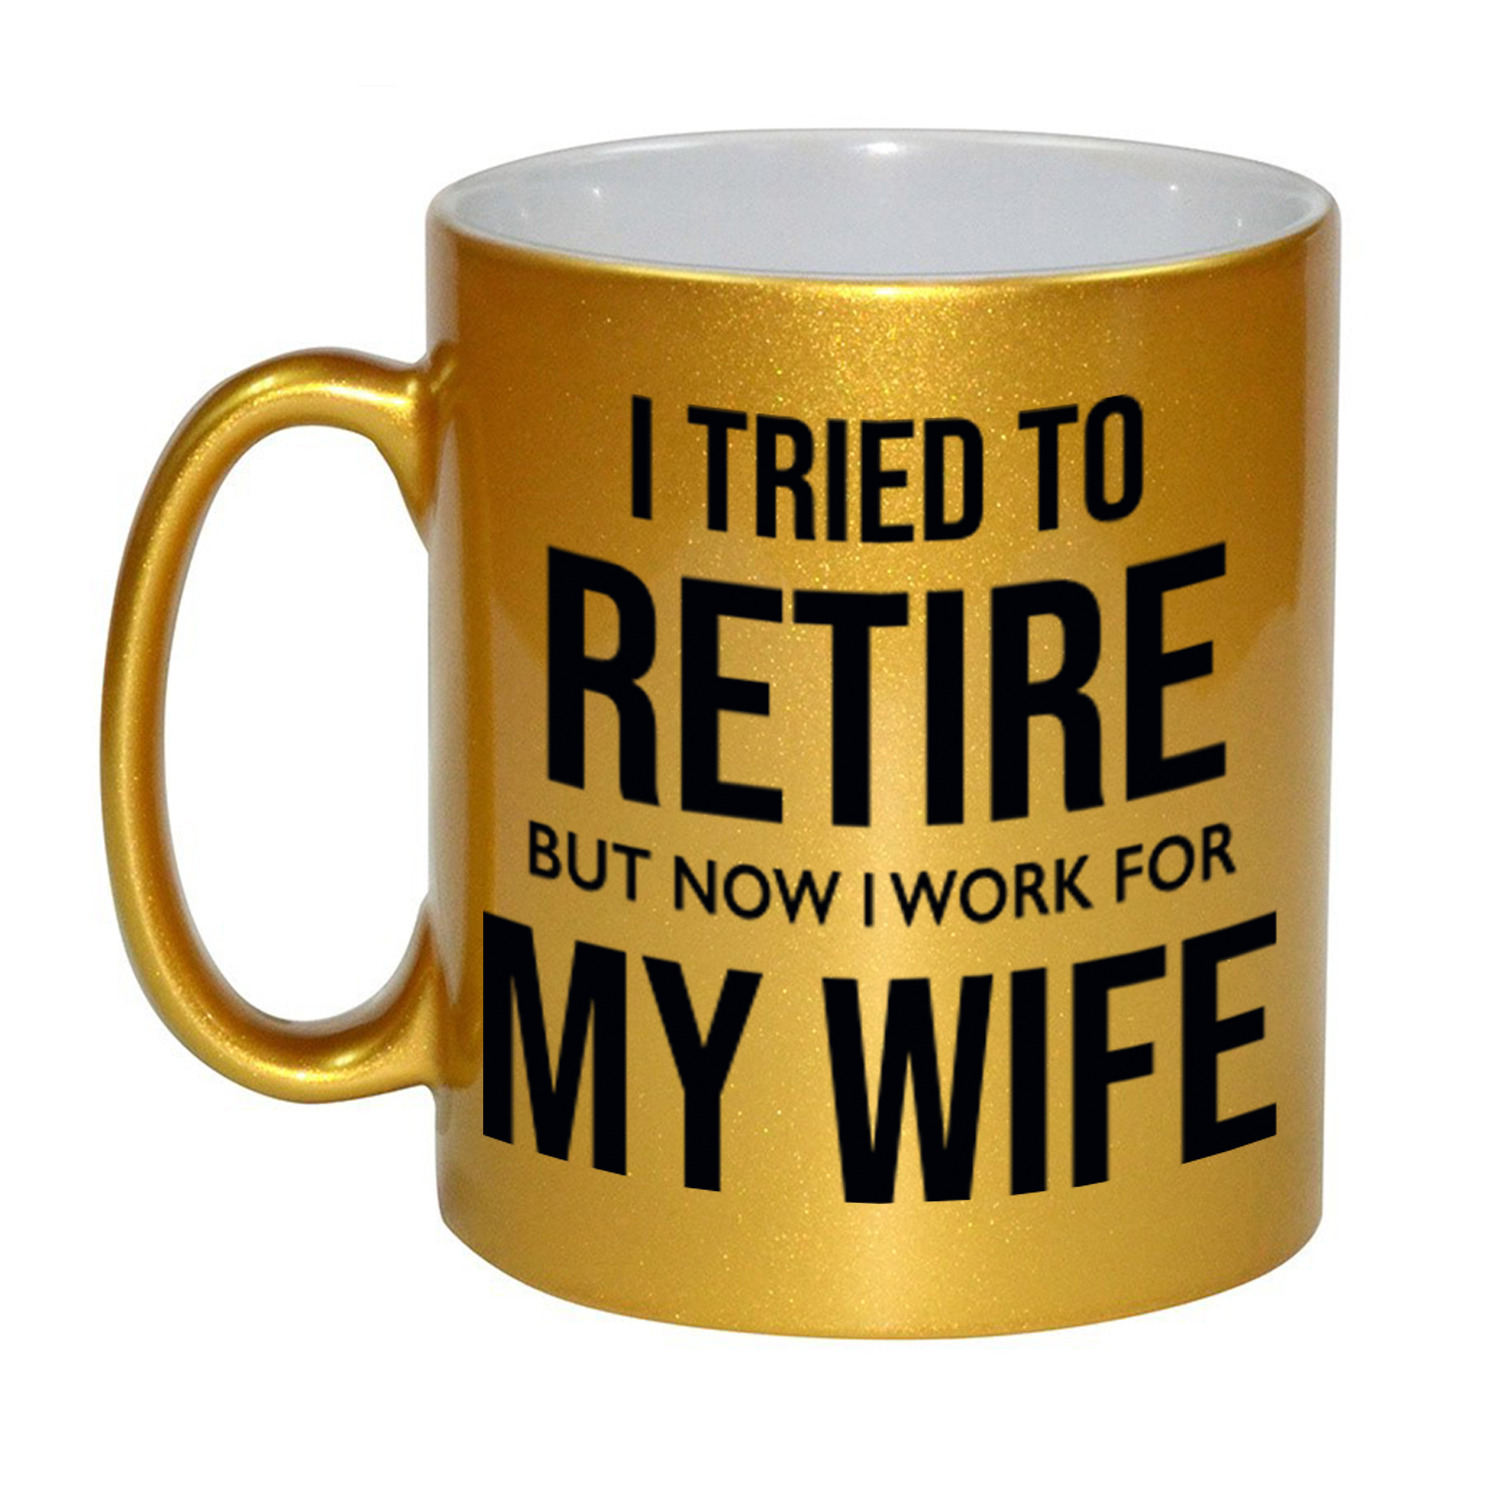 I tried to retire but now I work for my wife pensioen mok-beker goud afscheidscadeau 330 ml